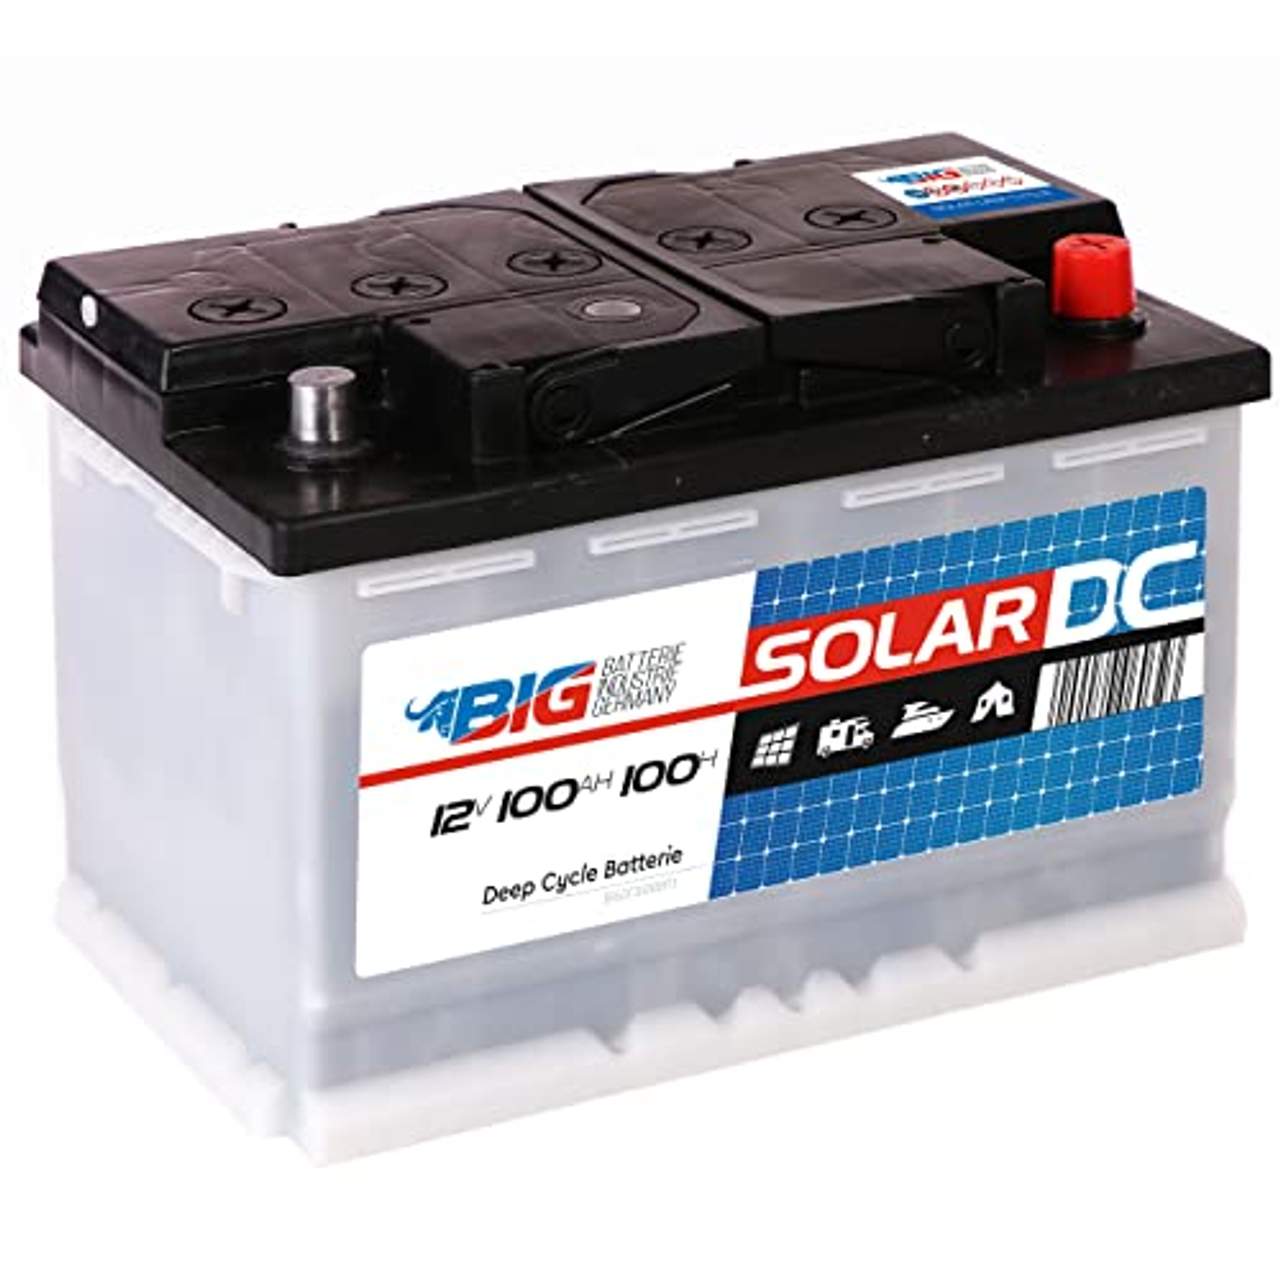 Solarbatterie 100Ah BIG 12V Versorgungsbatterie Boot Caravan